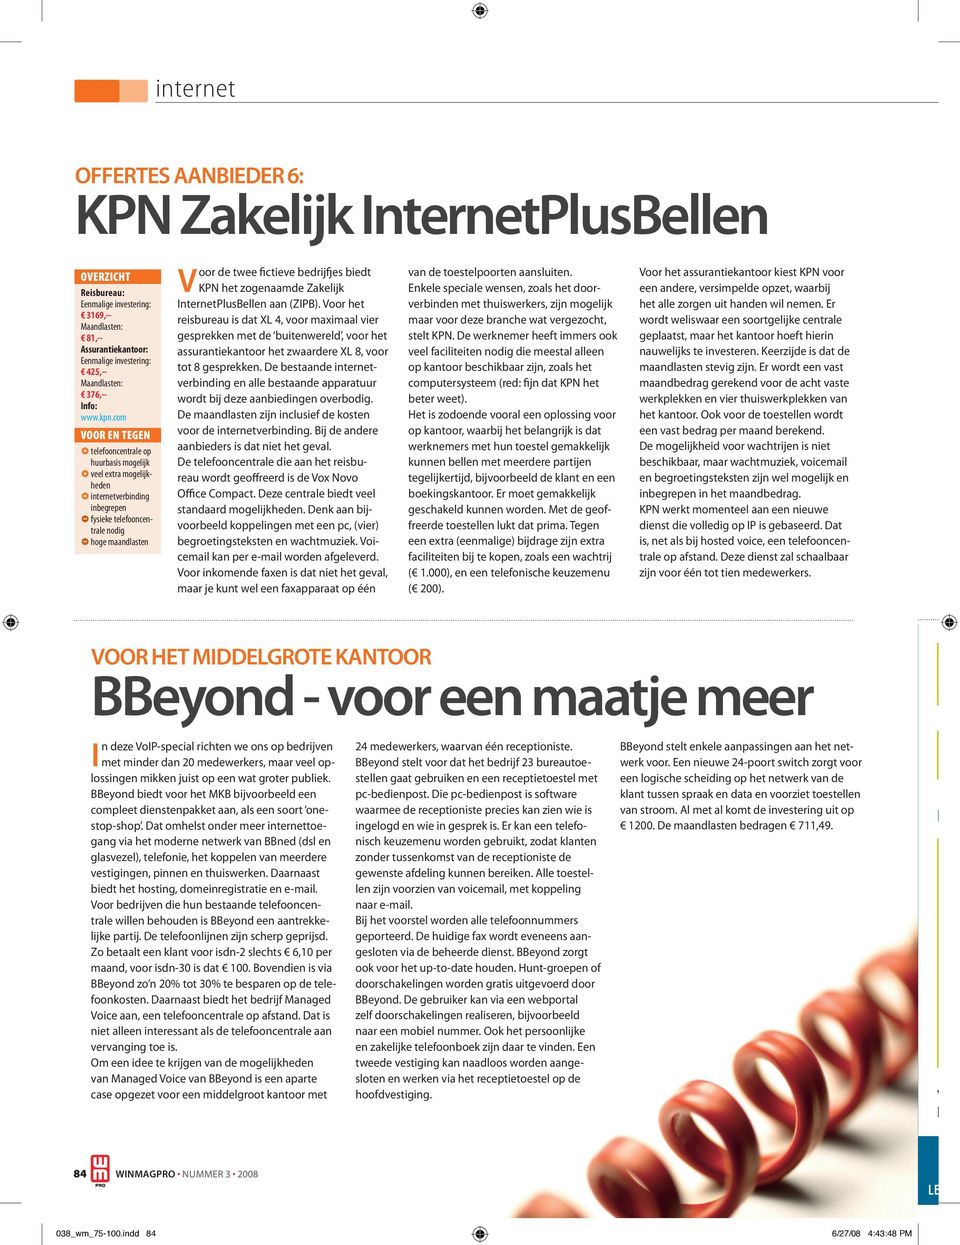 bedrijfjes biedt KPN het zogenaamde Zakelijk InternetPlusBellen aan (ZIPB).